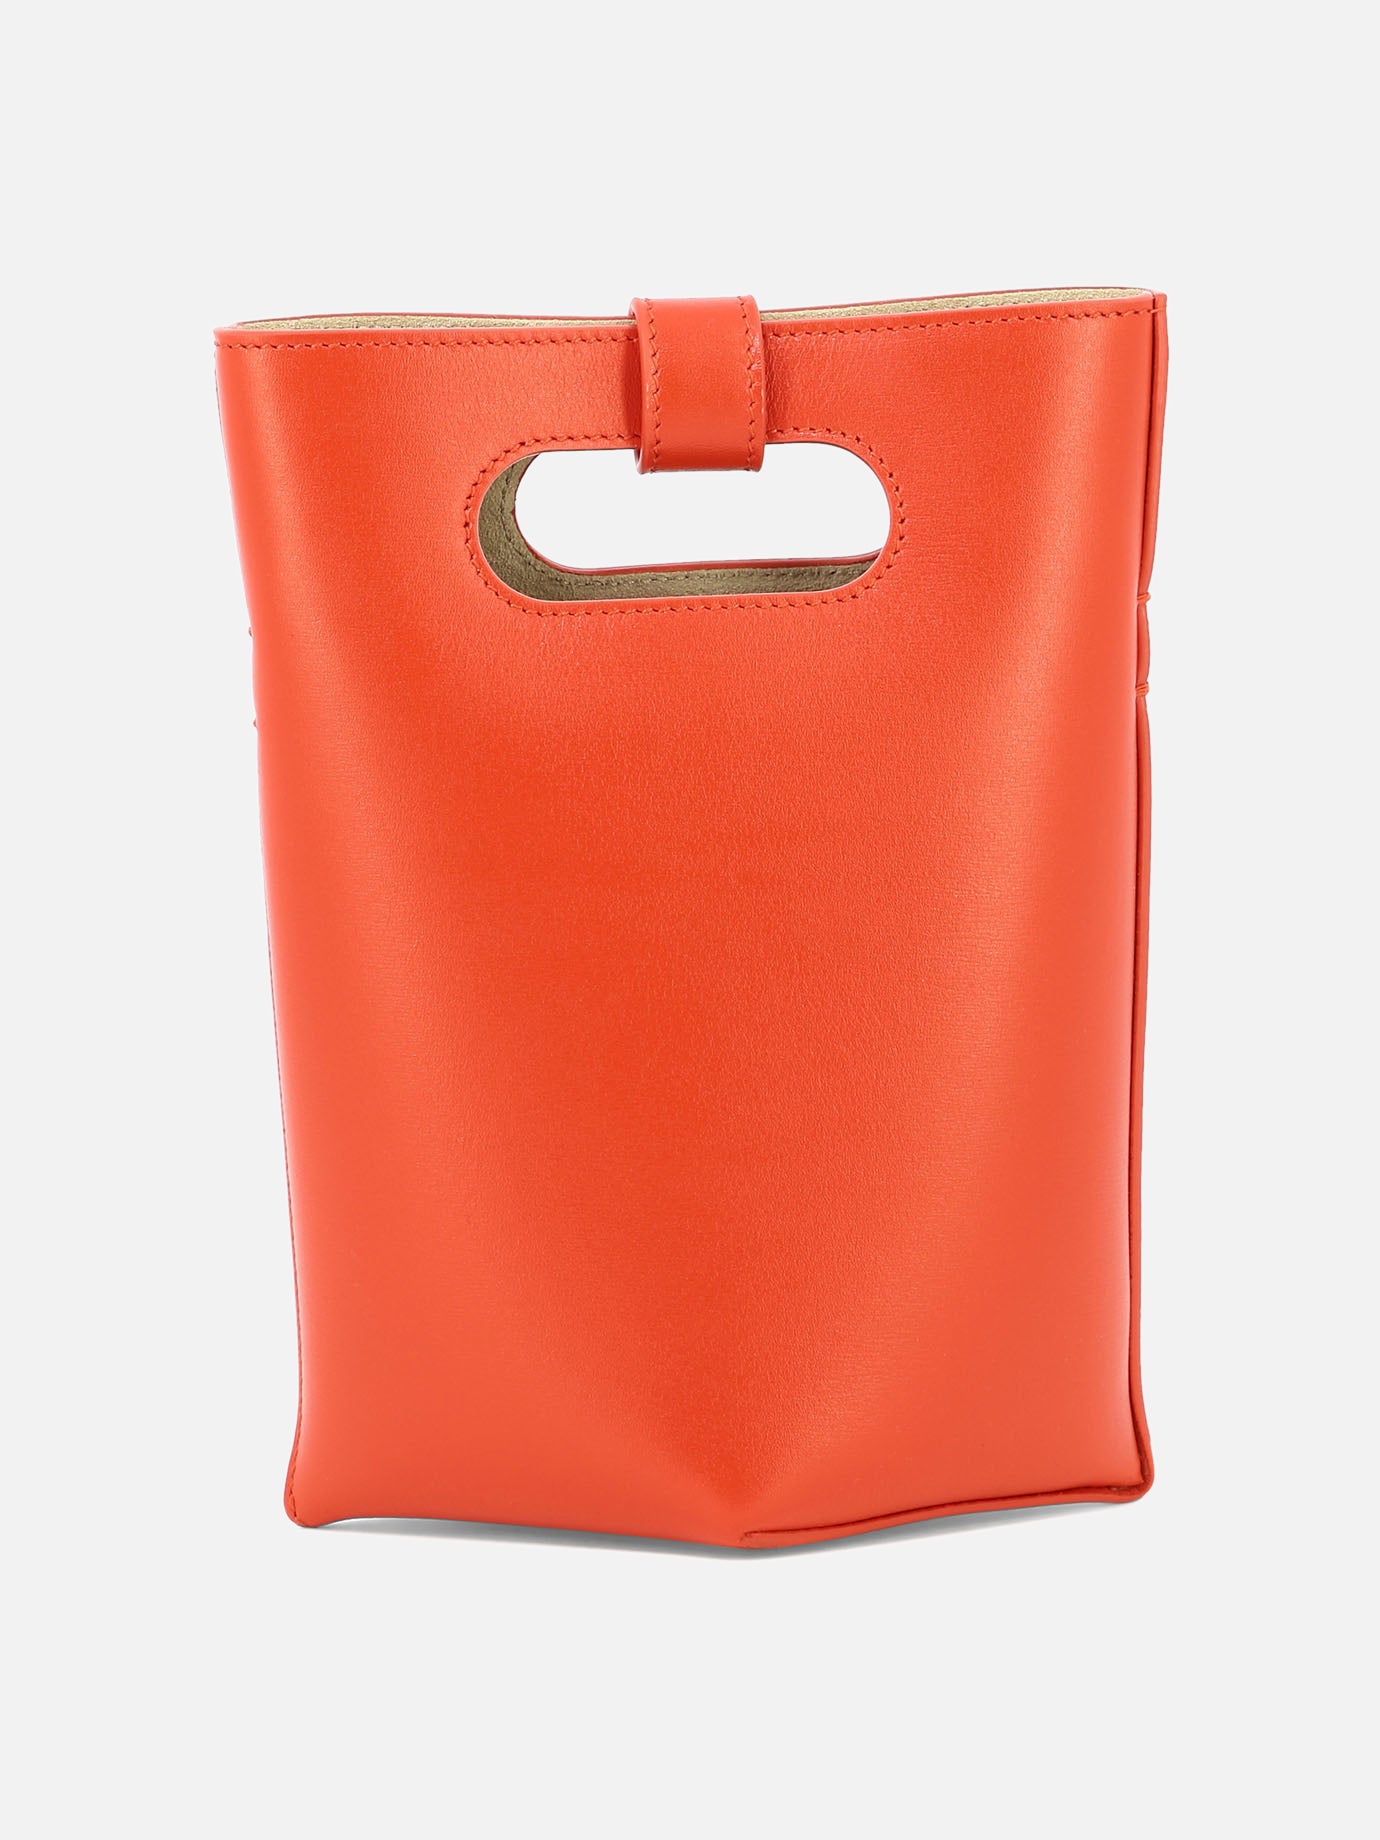 "Folded" handbag